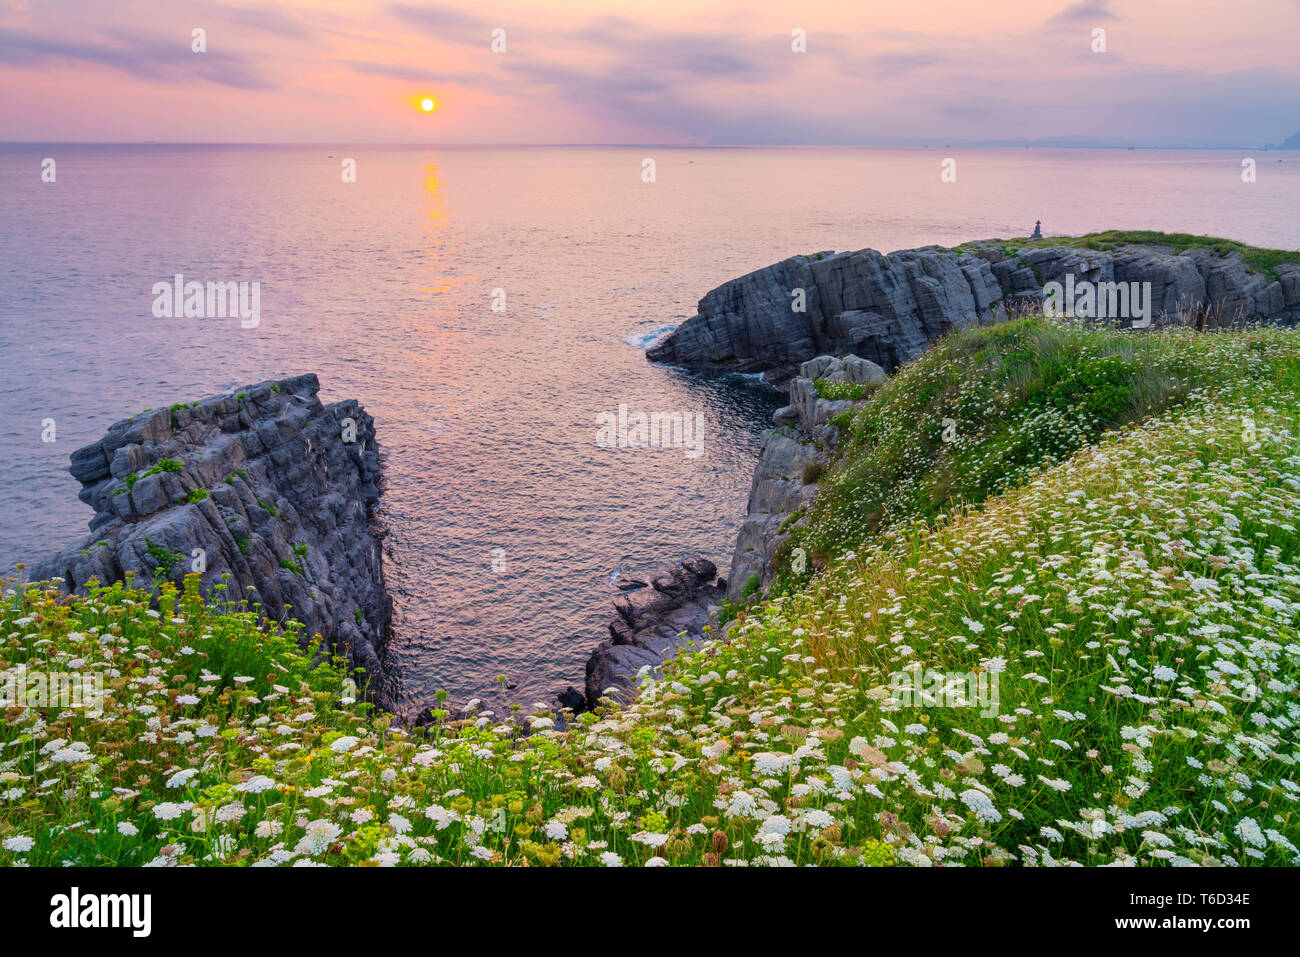 Spagna Cantabria, Castro-Urdiales, cove con fiori selvatici Foto Stock